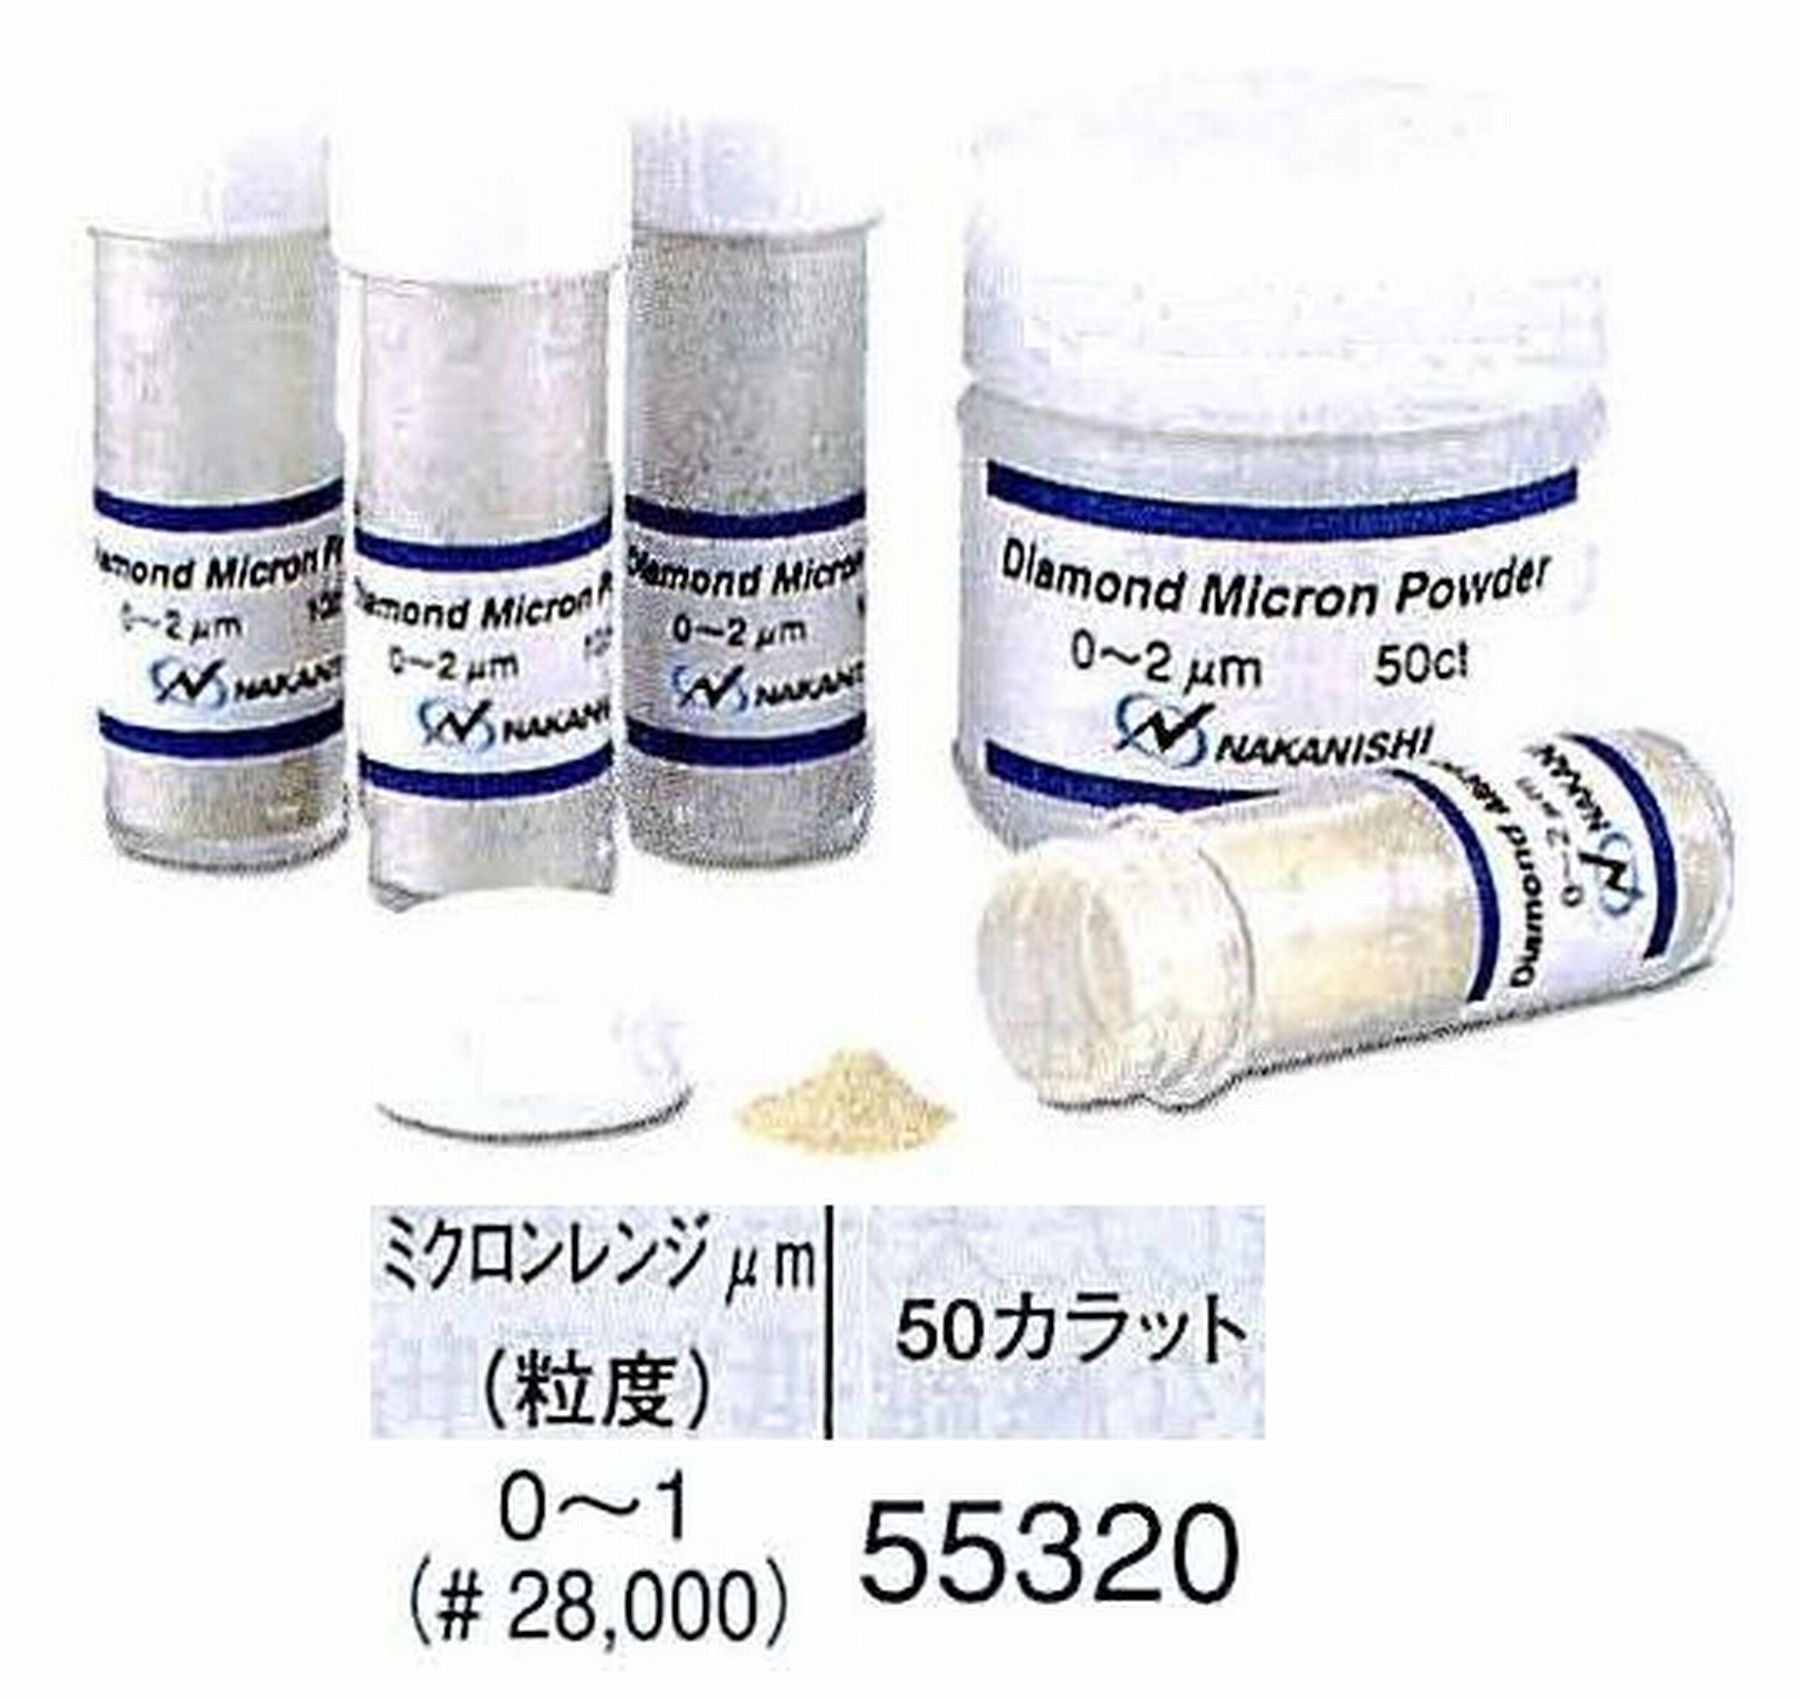 ナカニシ/NAKANISHI ダイヤモンドミクロンパウダー ミクロンレンジ0～1(砥度) 50カラット 55320